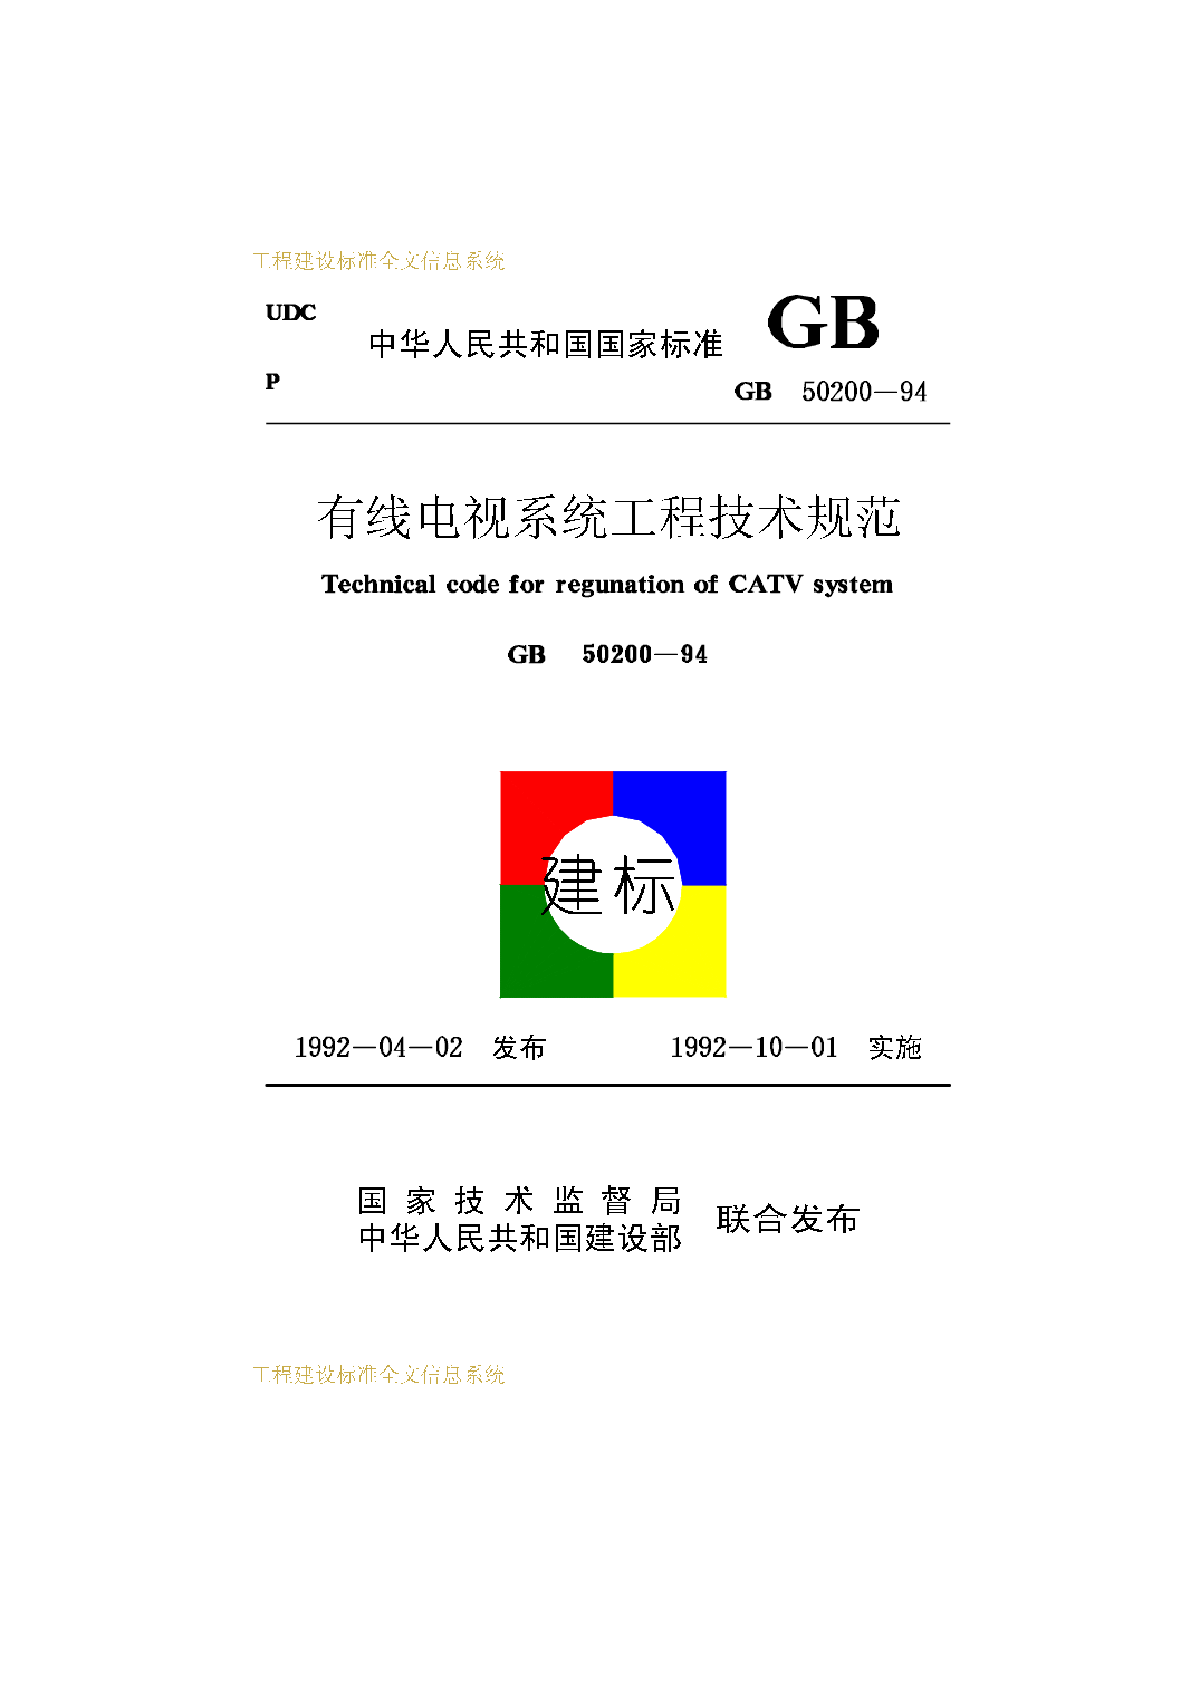 GB-50200-1994-有线电视系统工程技术规范